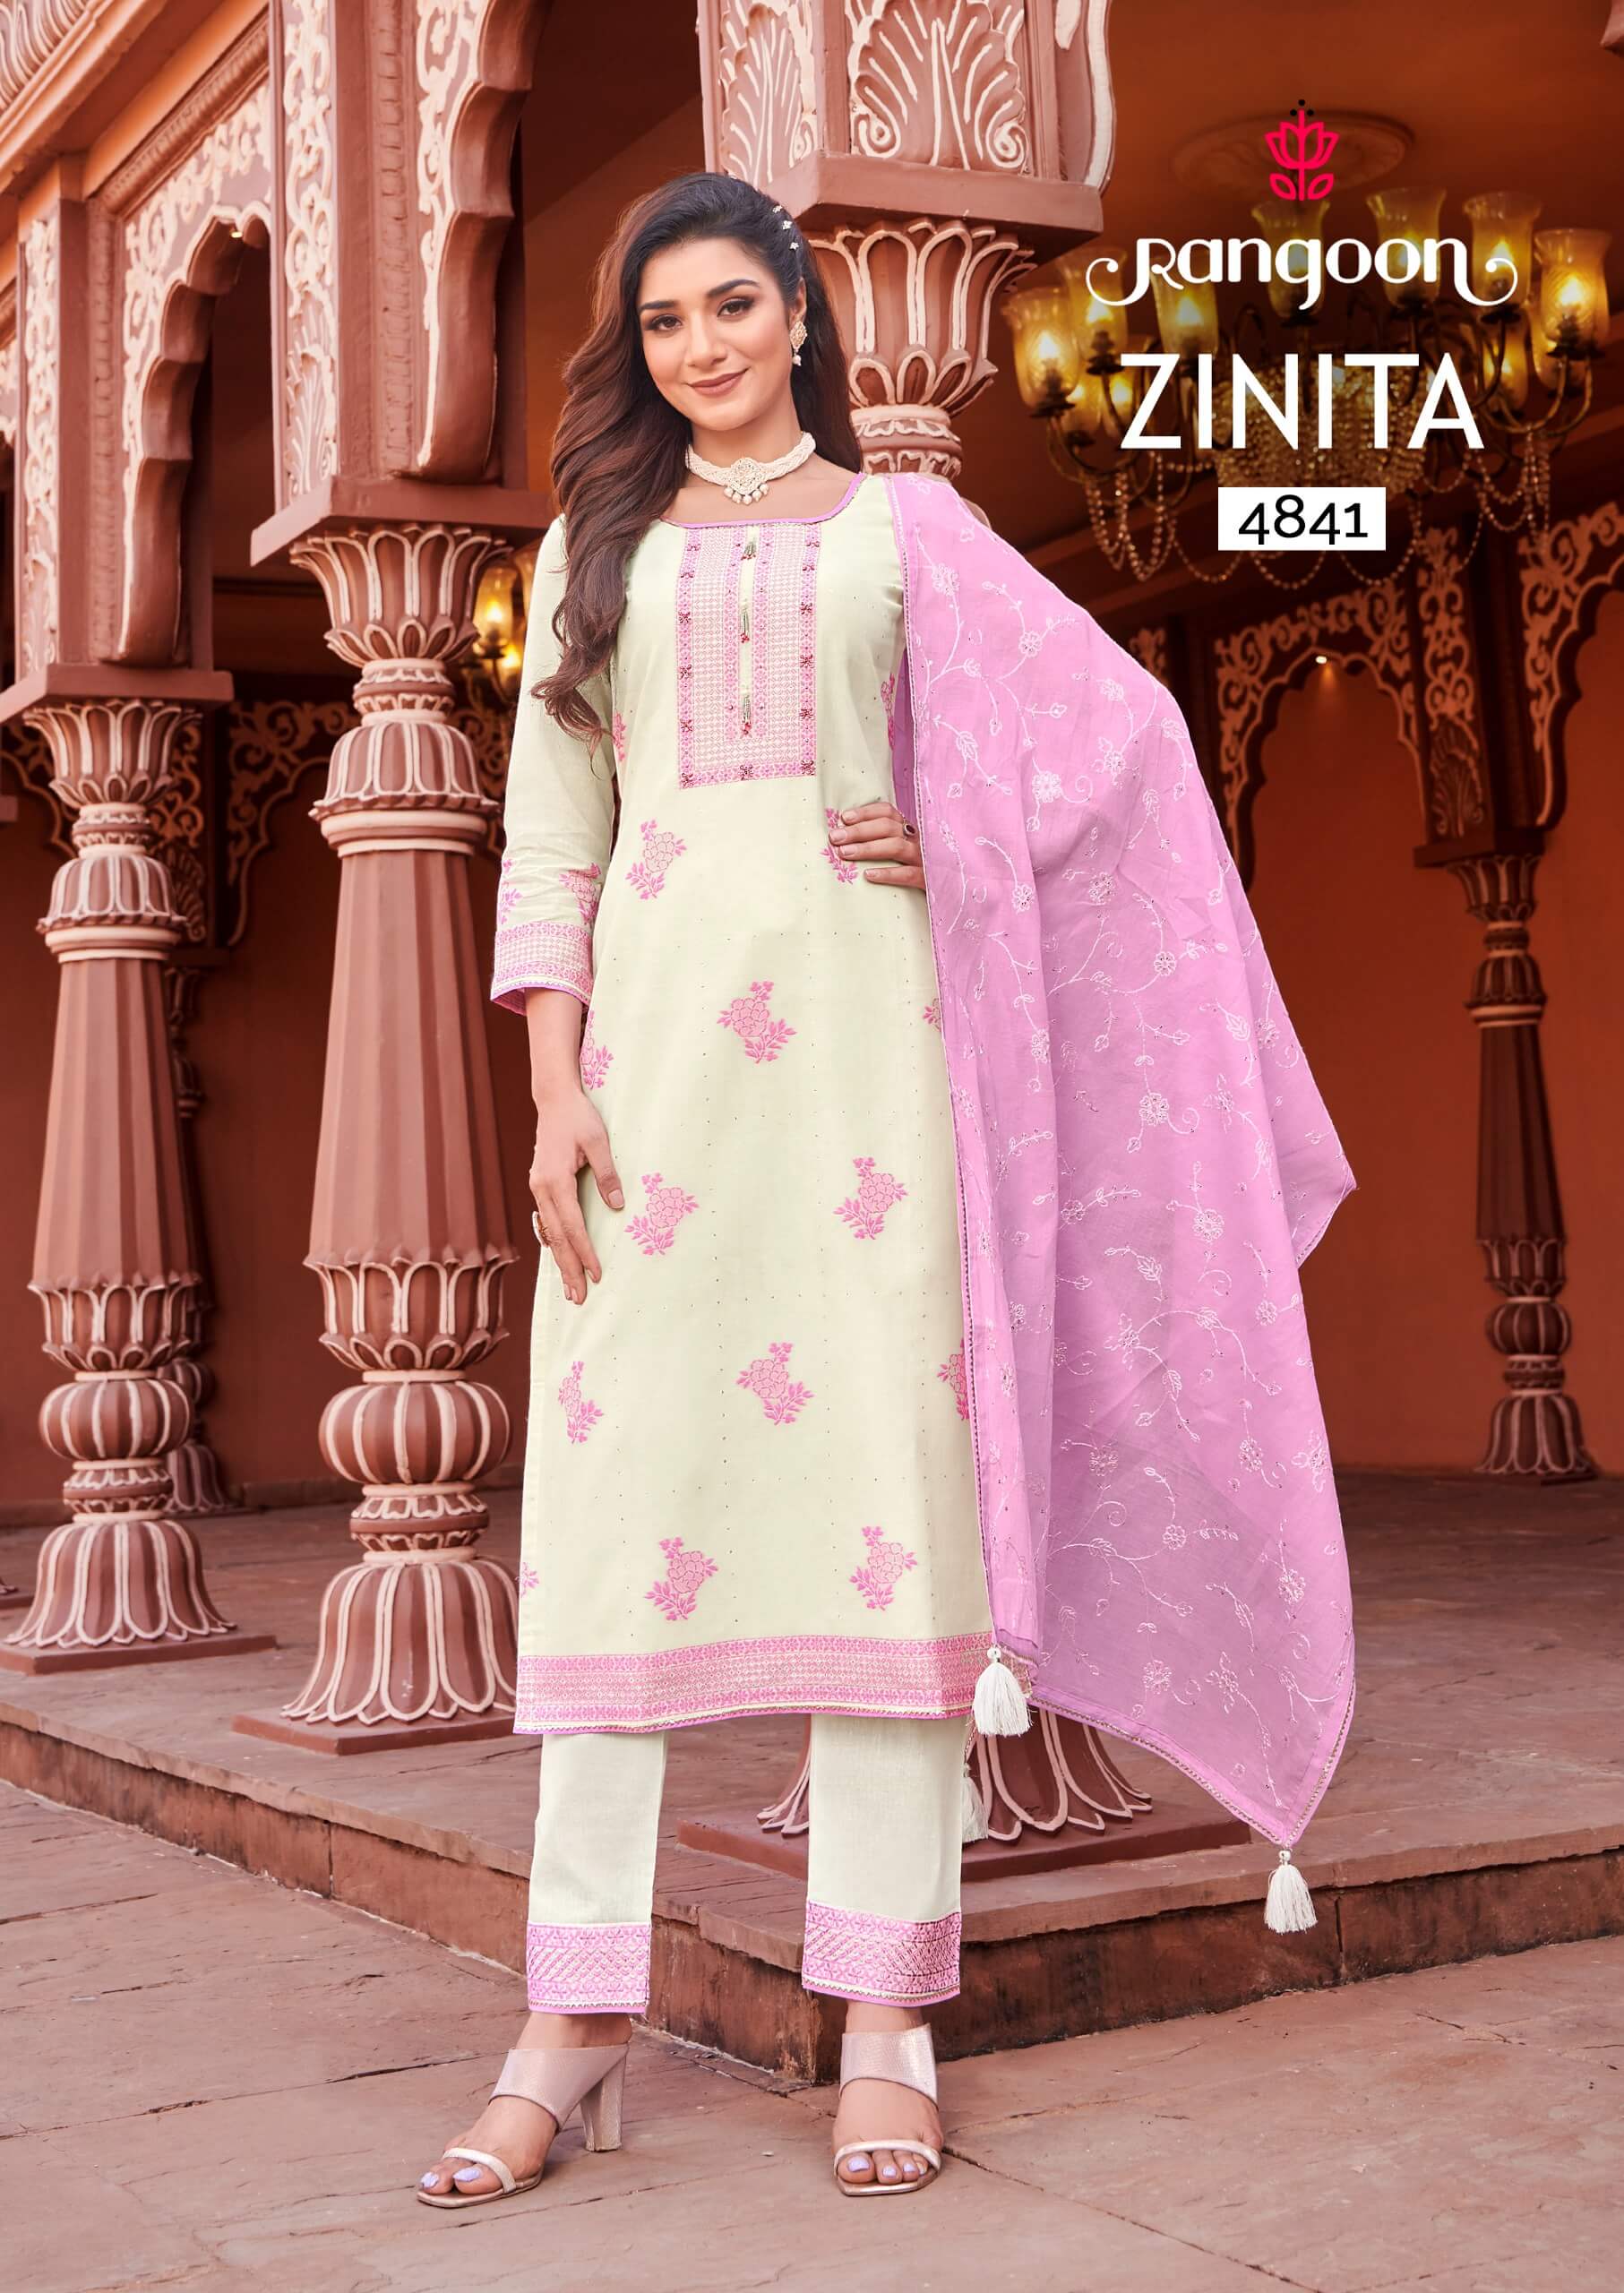 Rangoon Zinita Cotton Salwar Kameez Catalog at Wholesale Rate collection 4